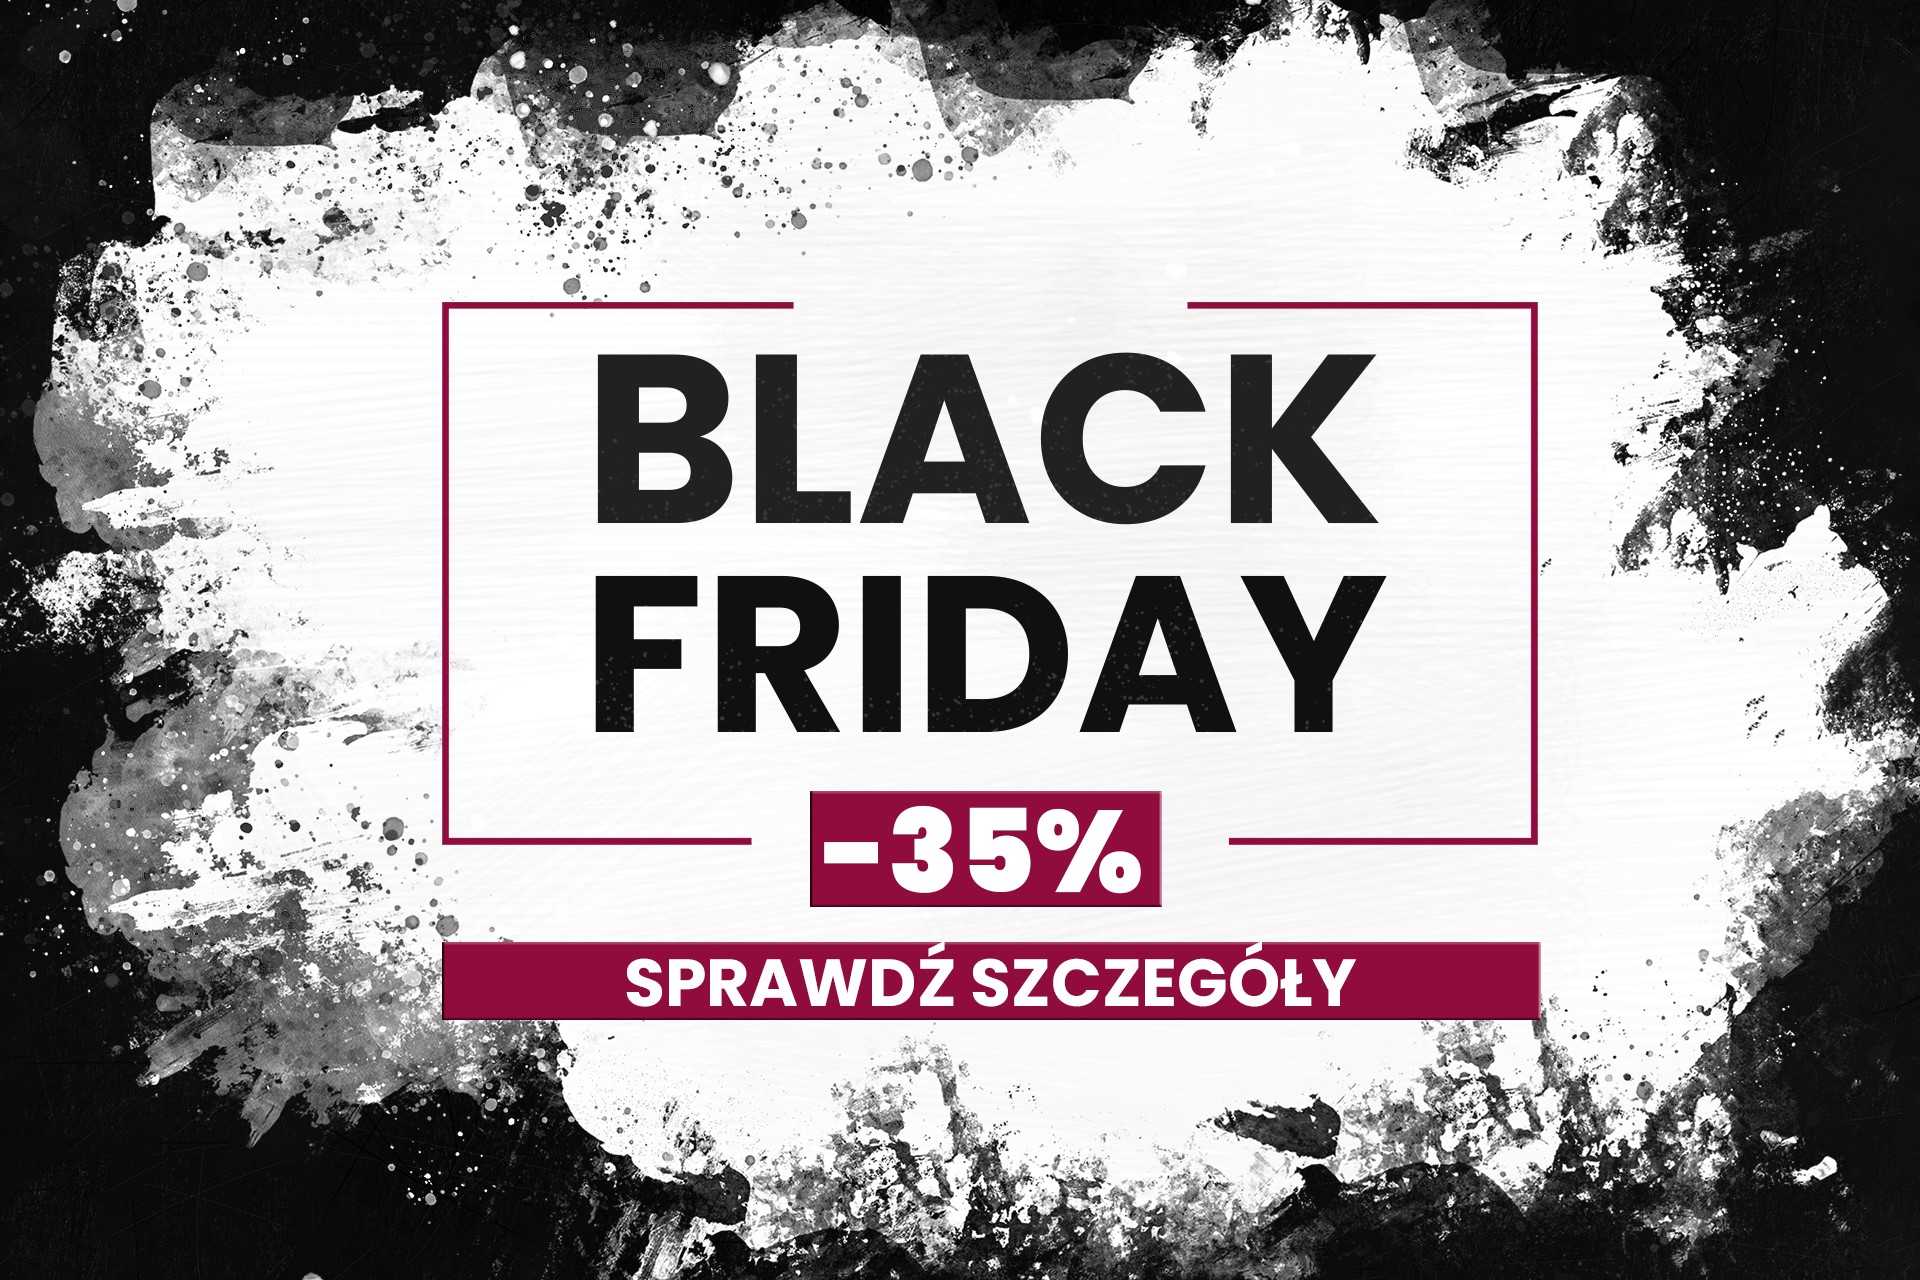 Black Friday - sklep lubar - oferta -35% - wybrane produkty